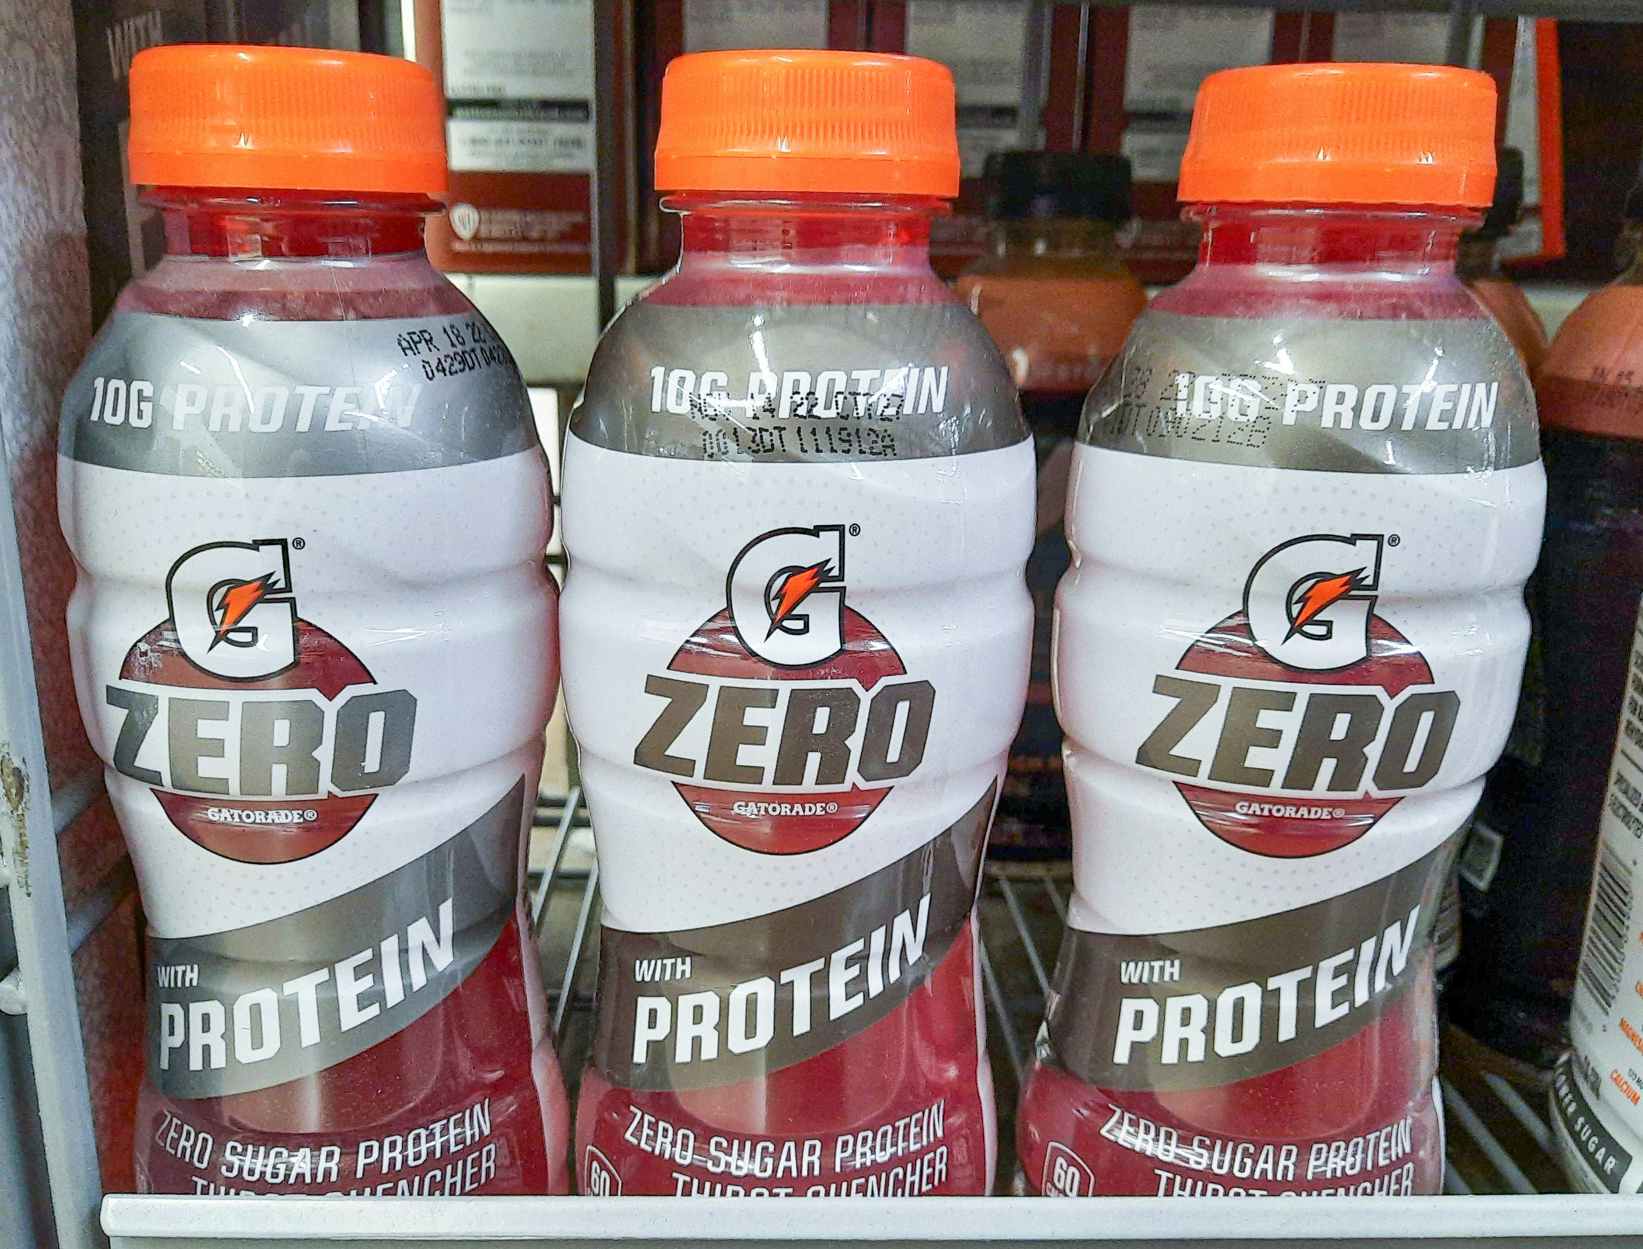 Gatorade Zero With Protein at Walmart